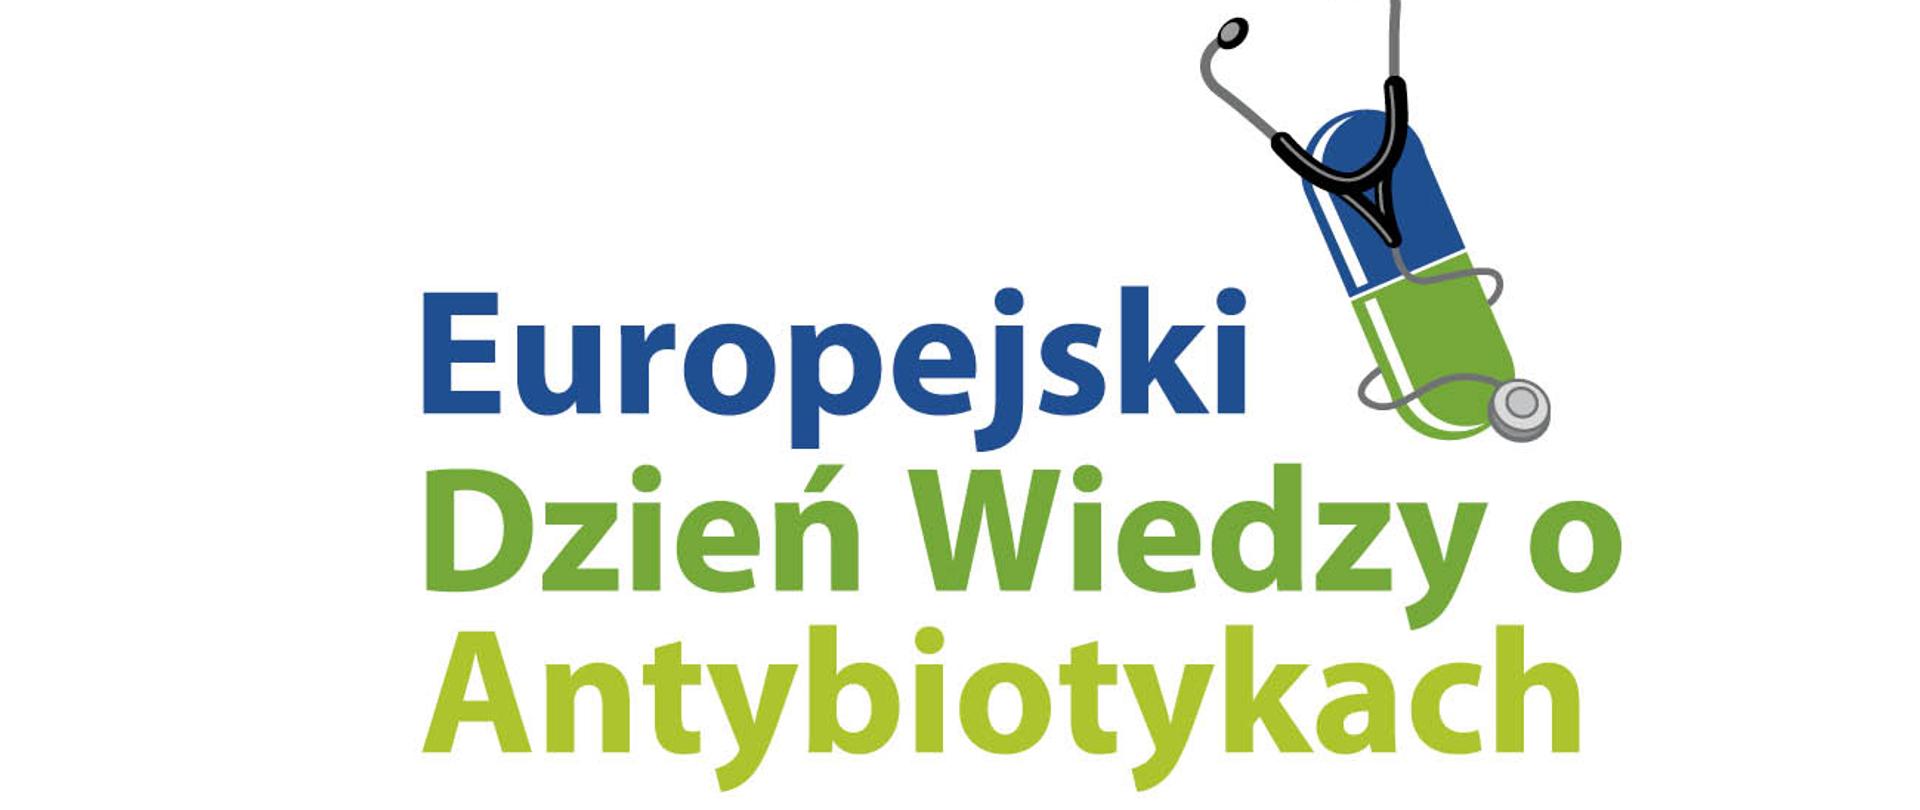 Napis Europejski Dzień Wiedzy o Antybiotykach 